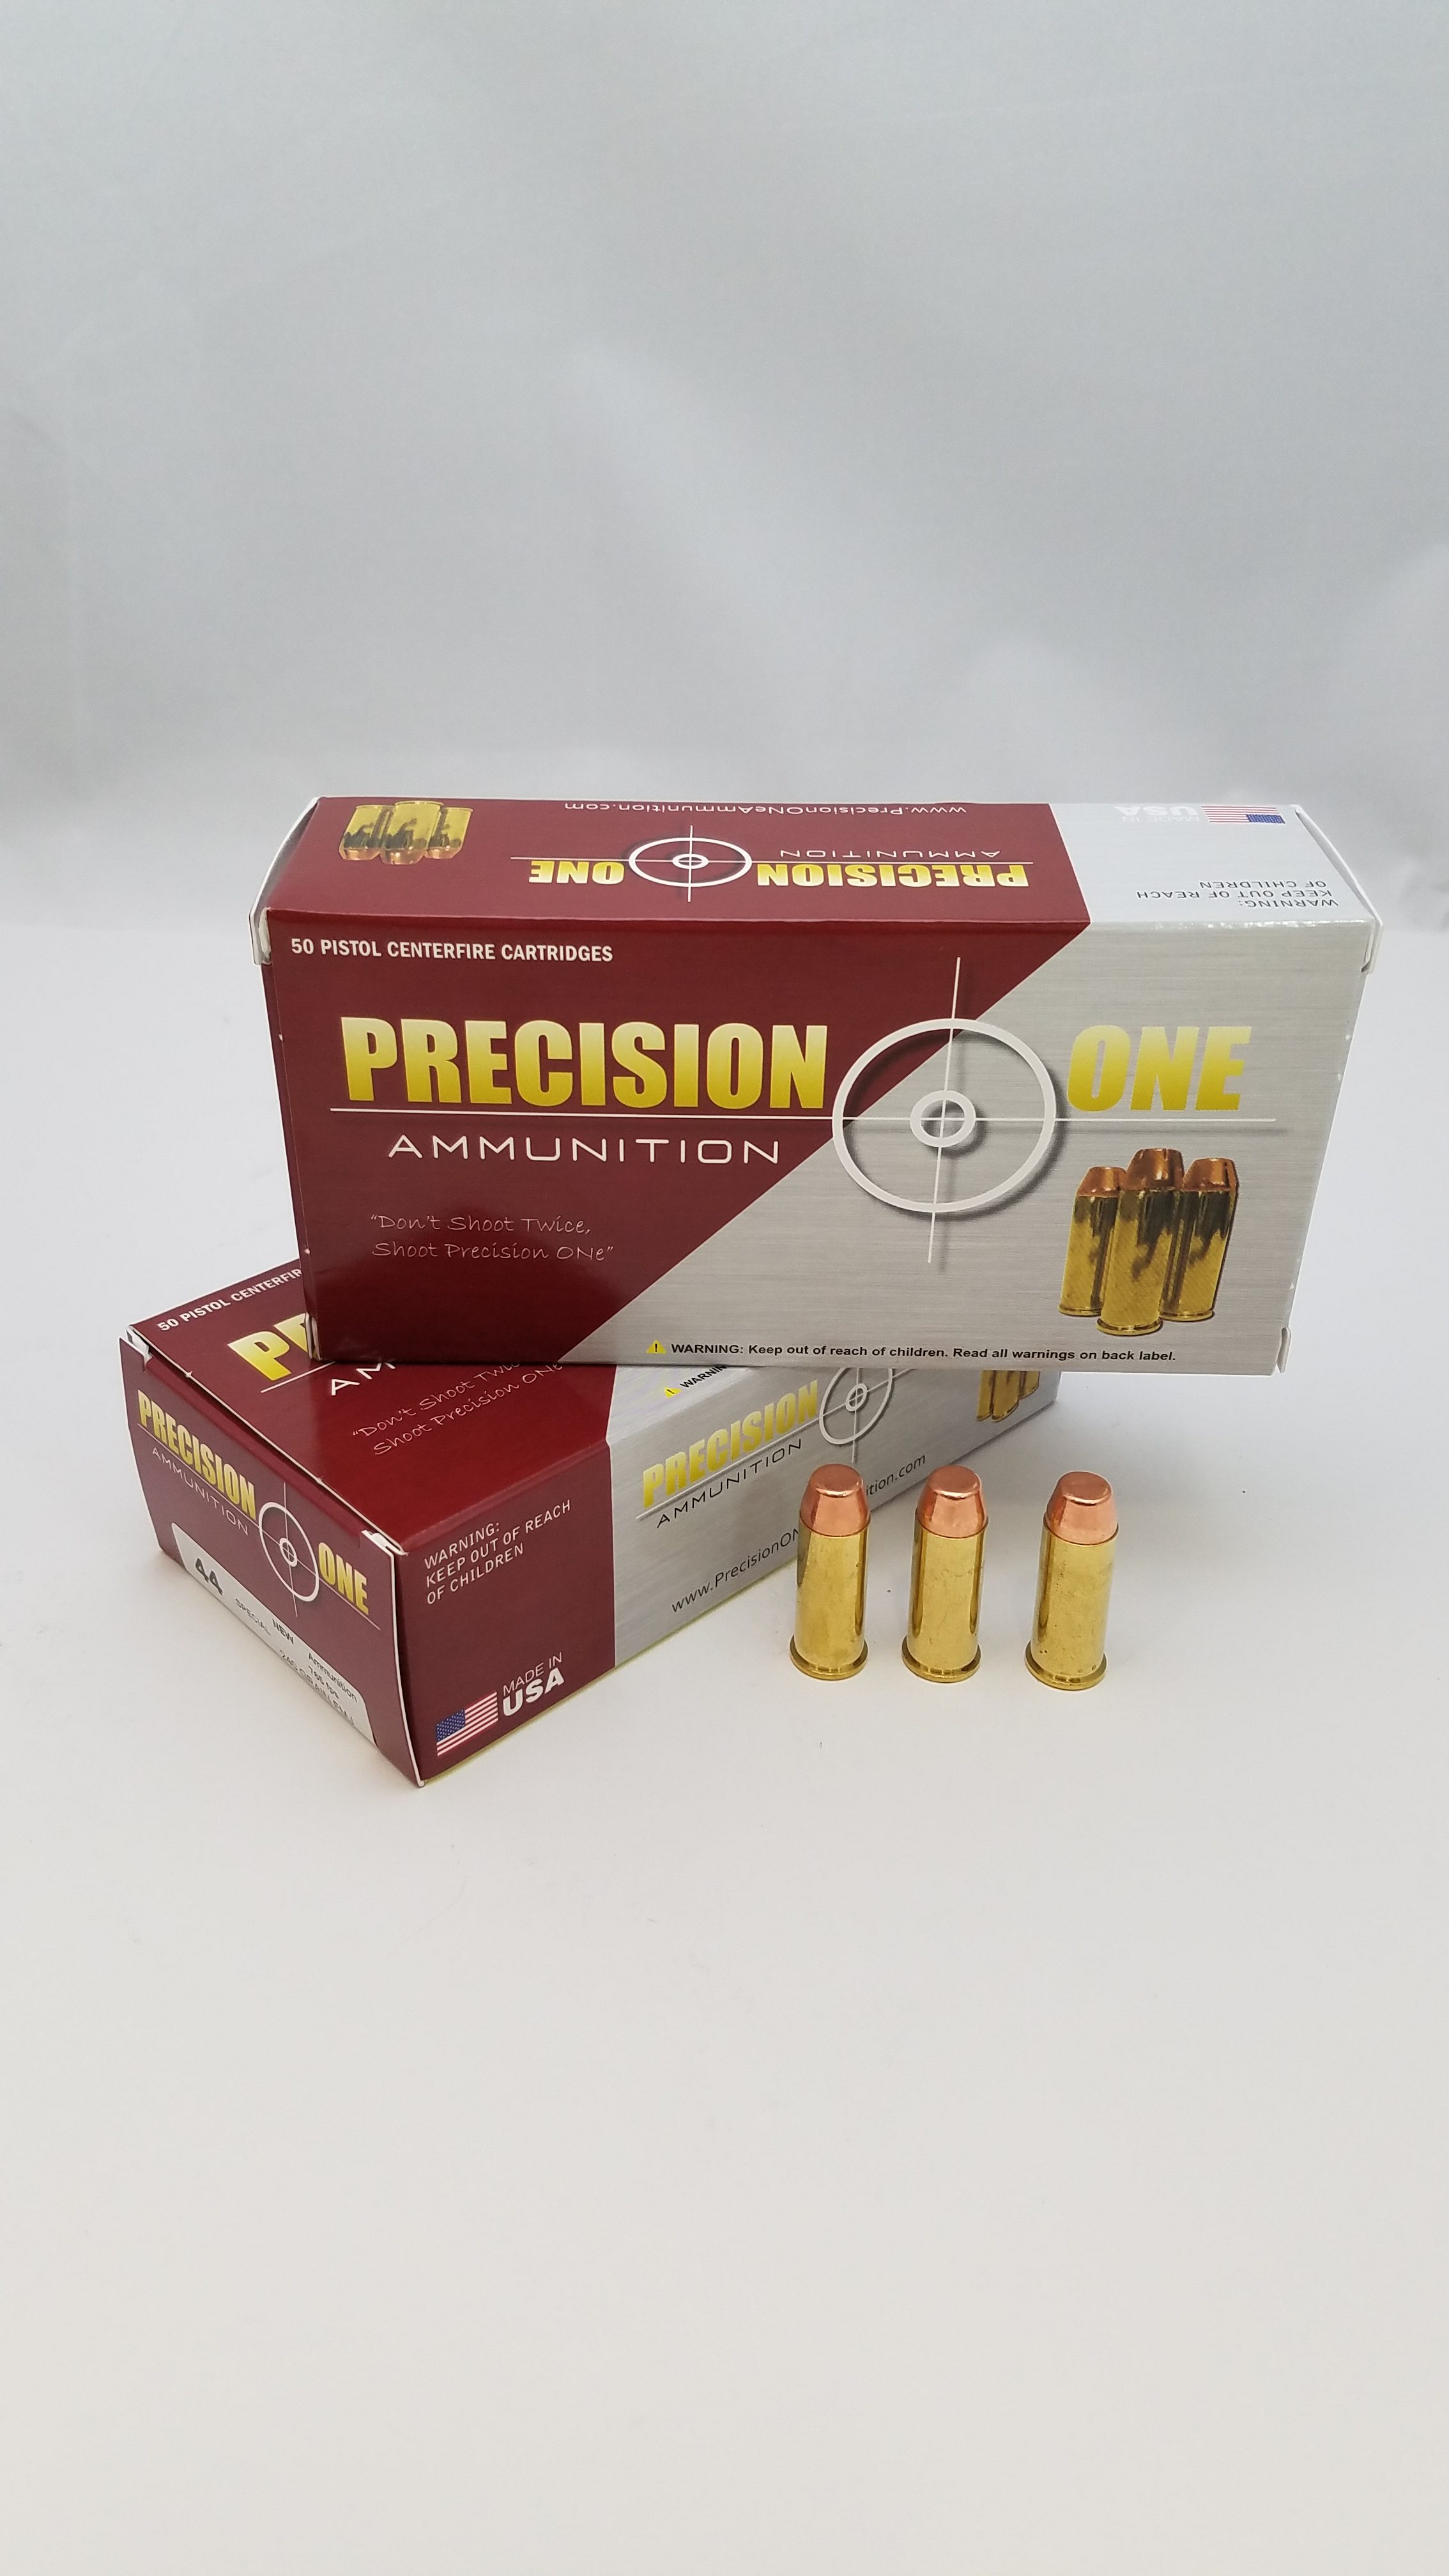 precisiononeammunition.com